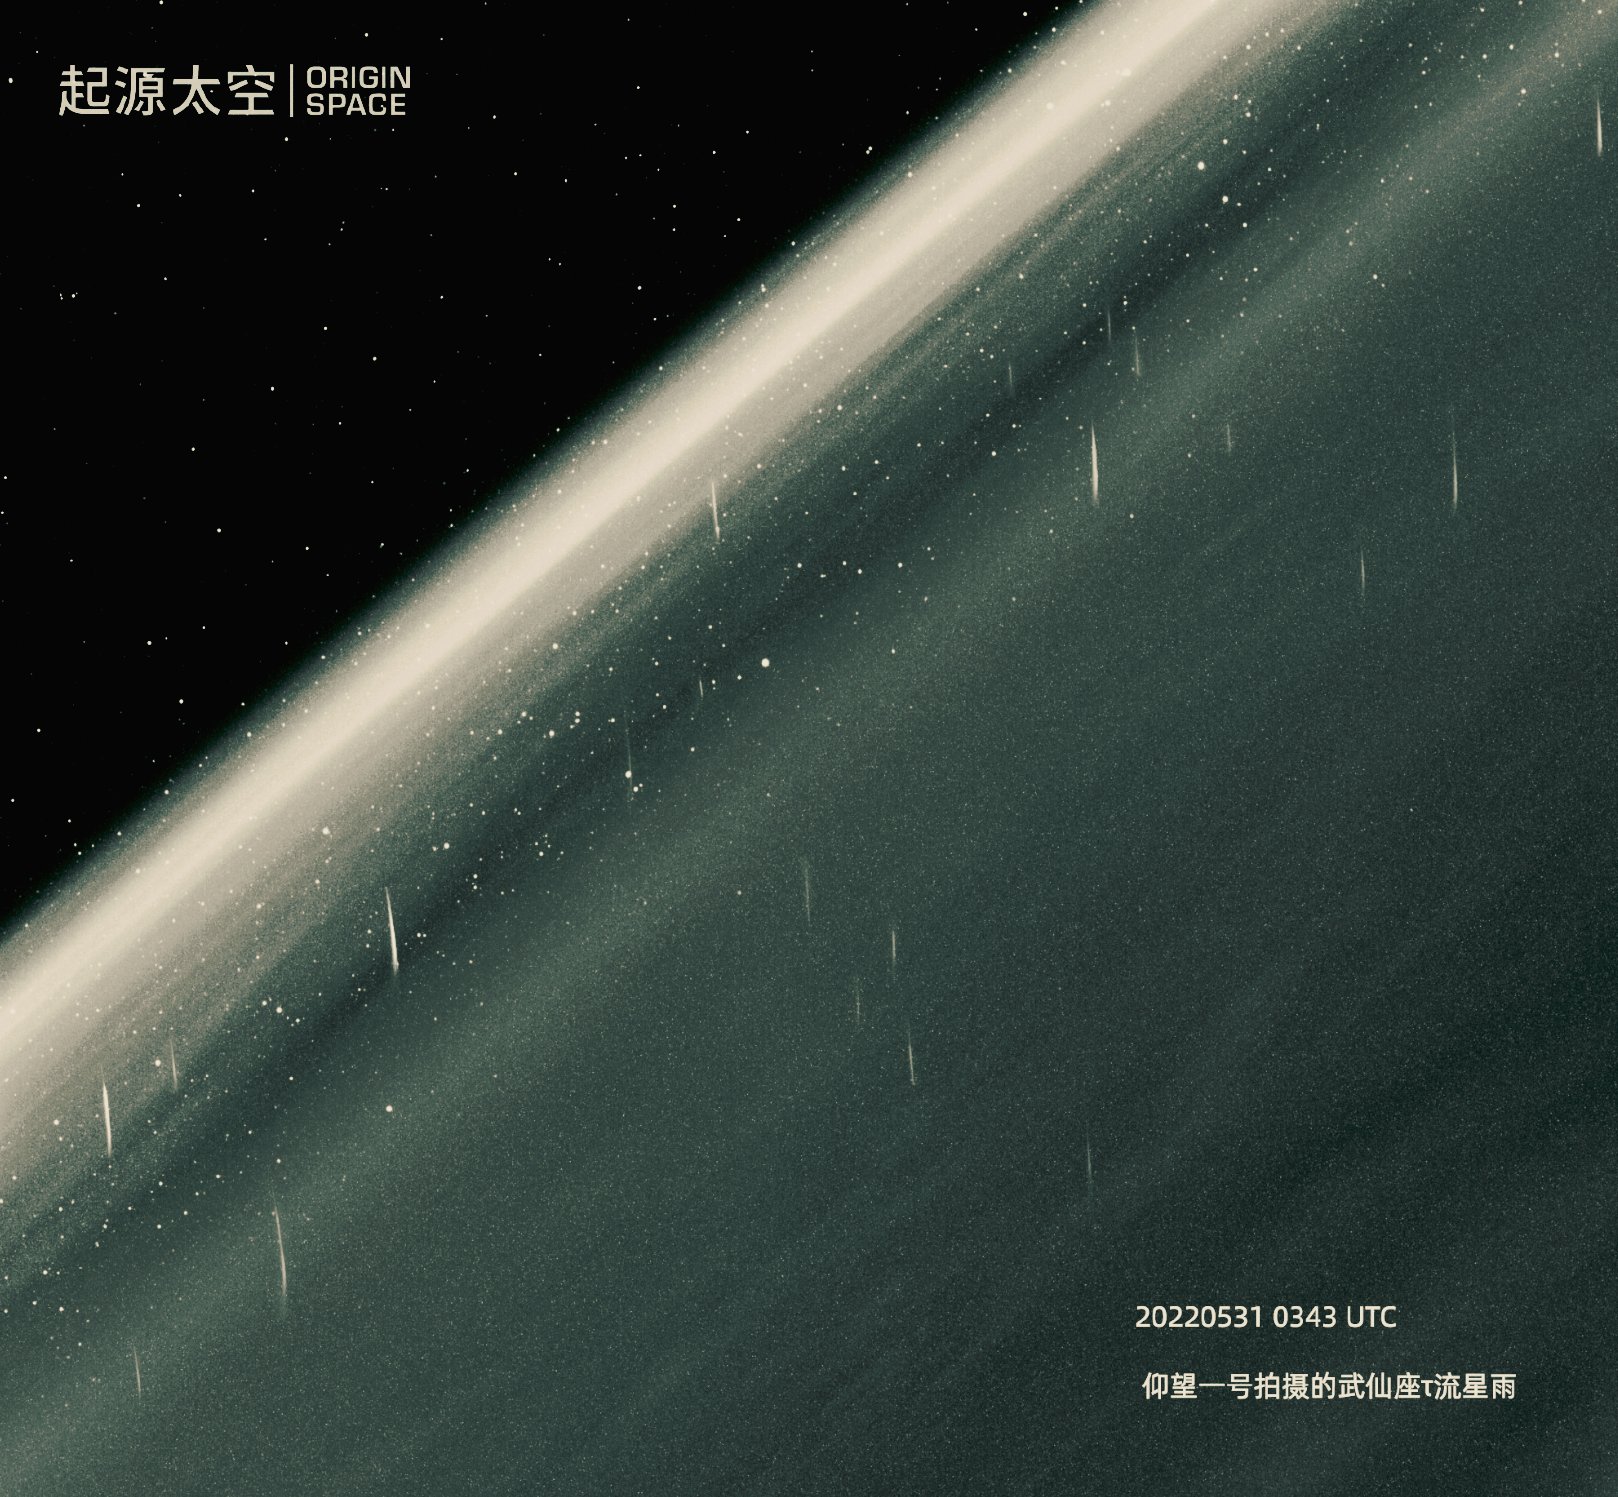 Magnifique image capturée par le télescope spatial chinois Yangwang-1 d'Origin Space.&nbsp;© Origin Space